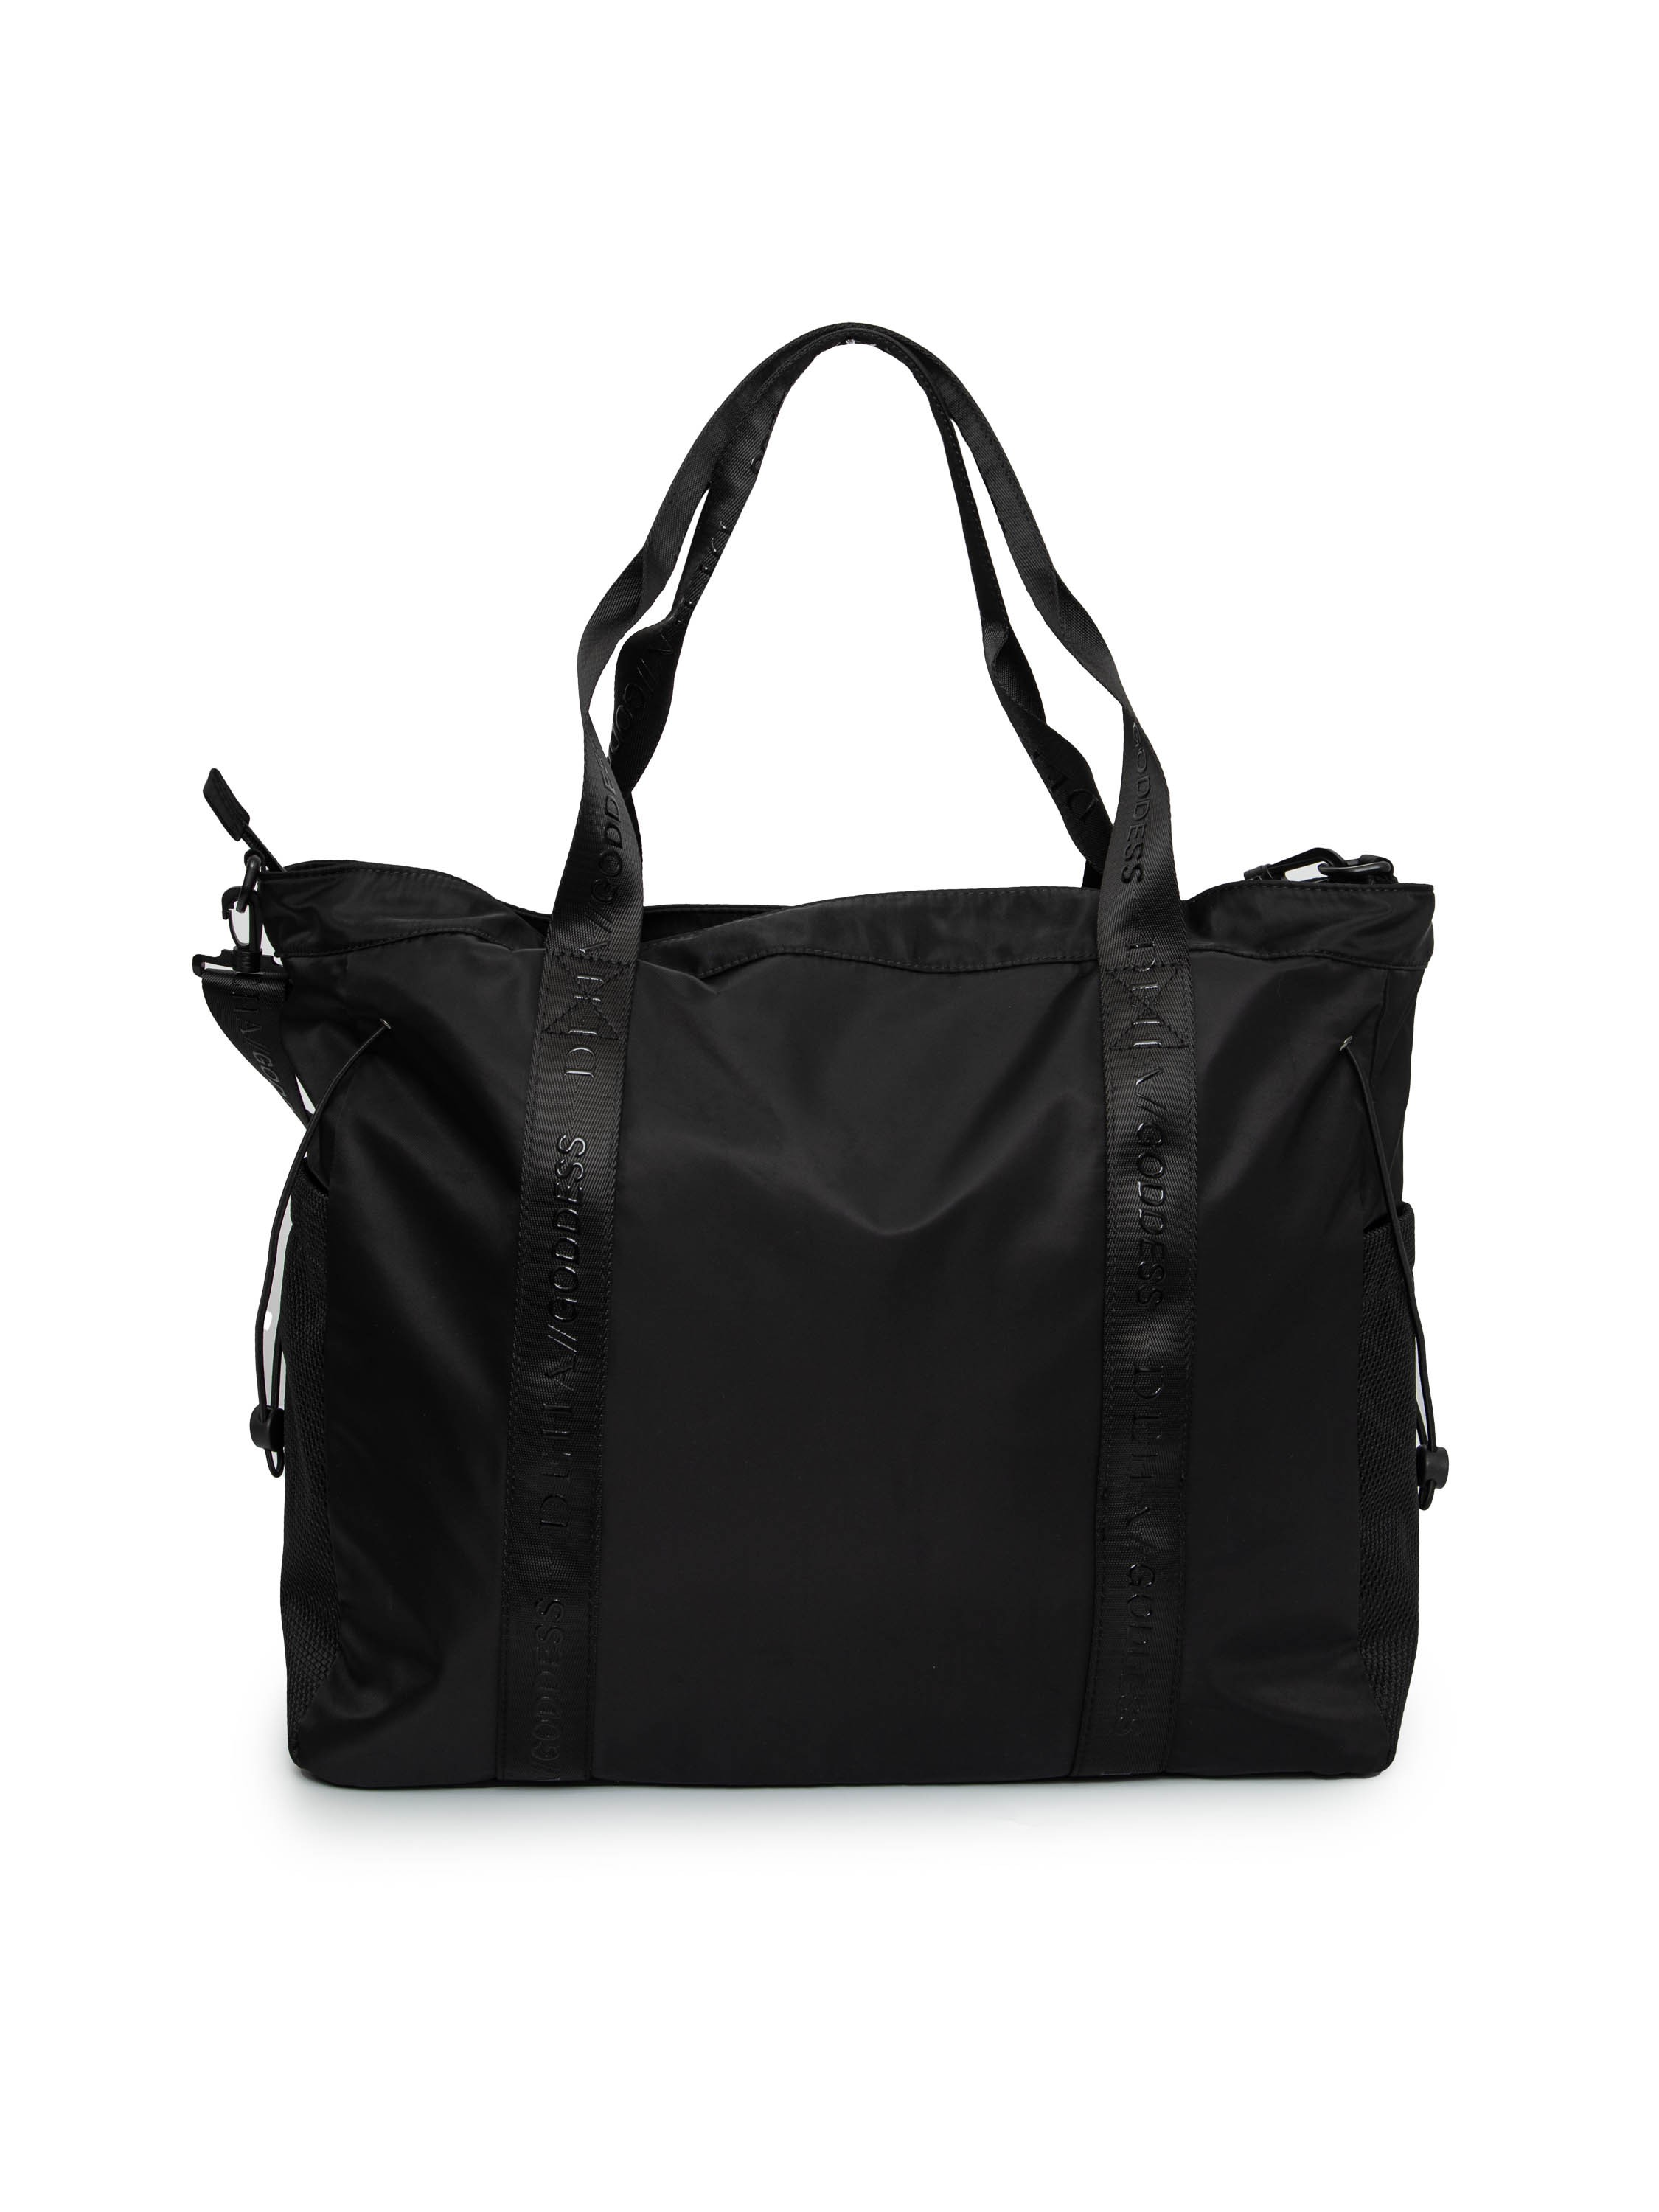 

Сумка женская Deha Shoulder Bag черная, 35*45*20 см, Черный, D83930